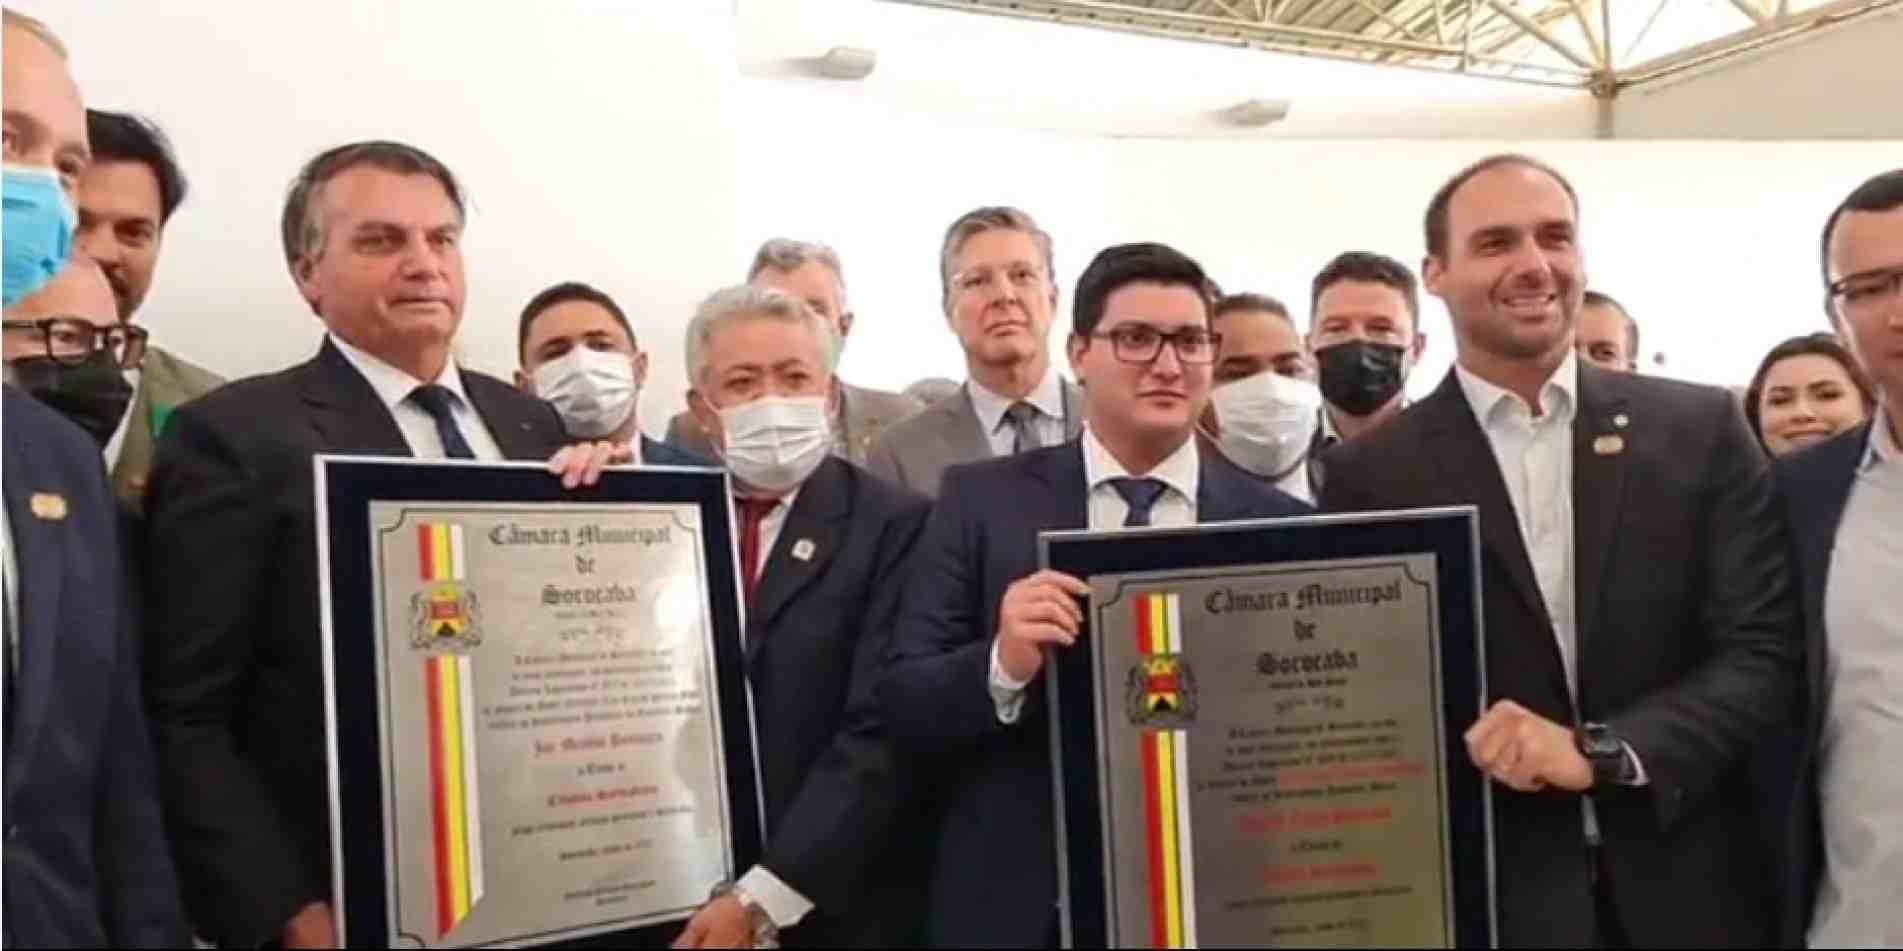 Jair e Eduardo Bolsonaro receberam títulos de Cidadãos Sorocabanos